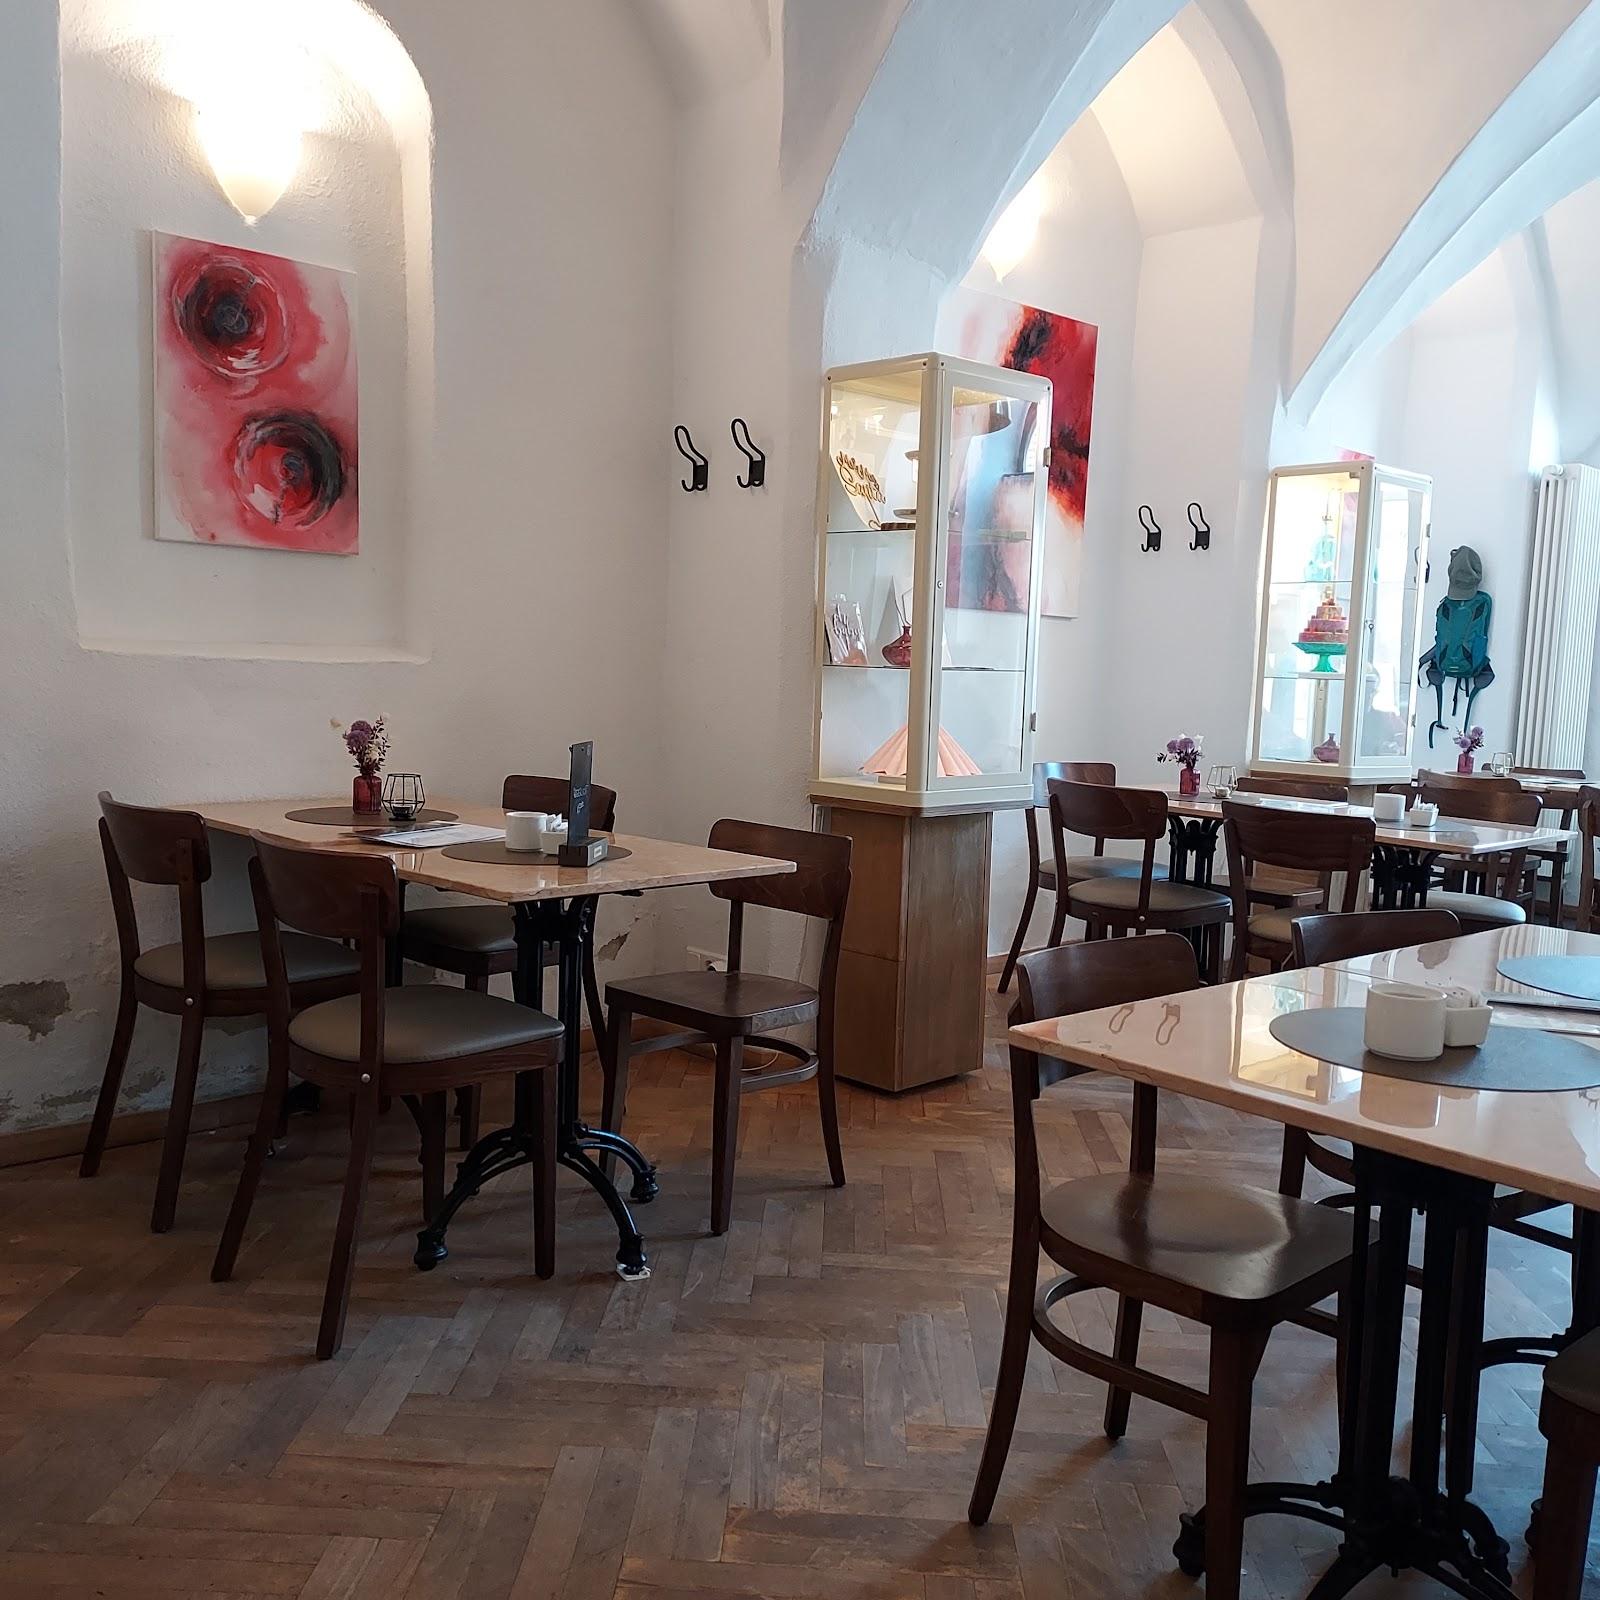 Restaurant "Tortenduft Cafe & Konditorei EK" in Strausberg